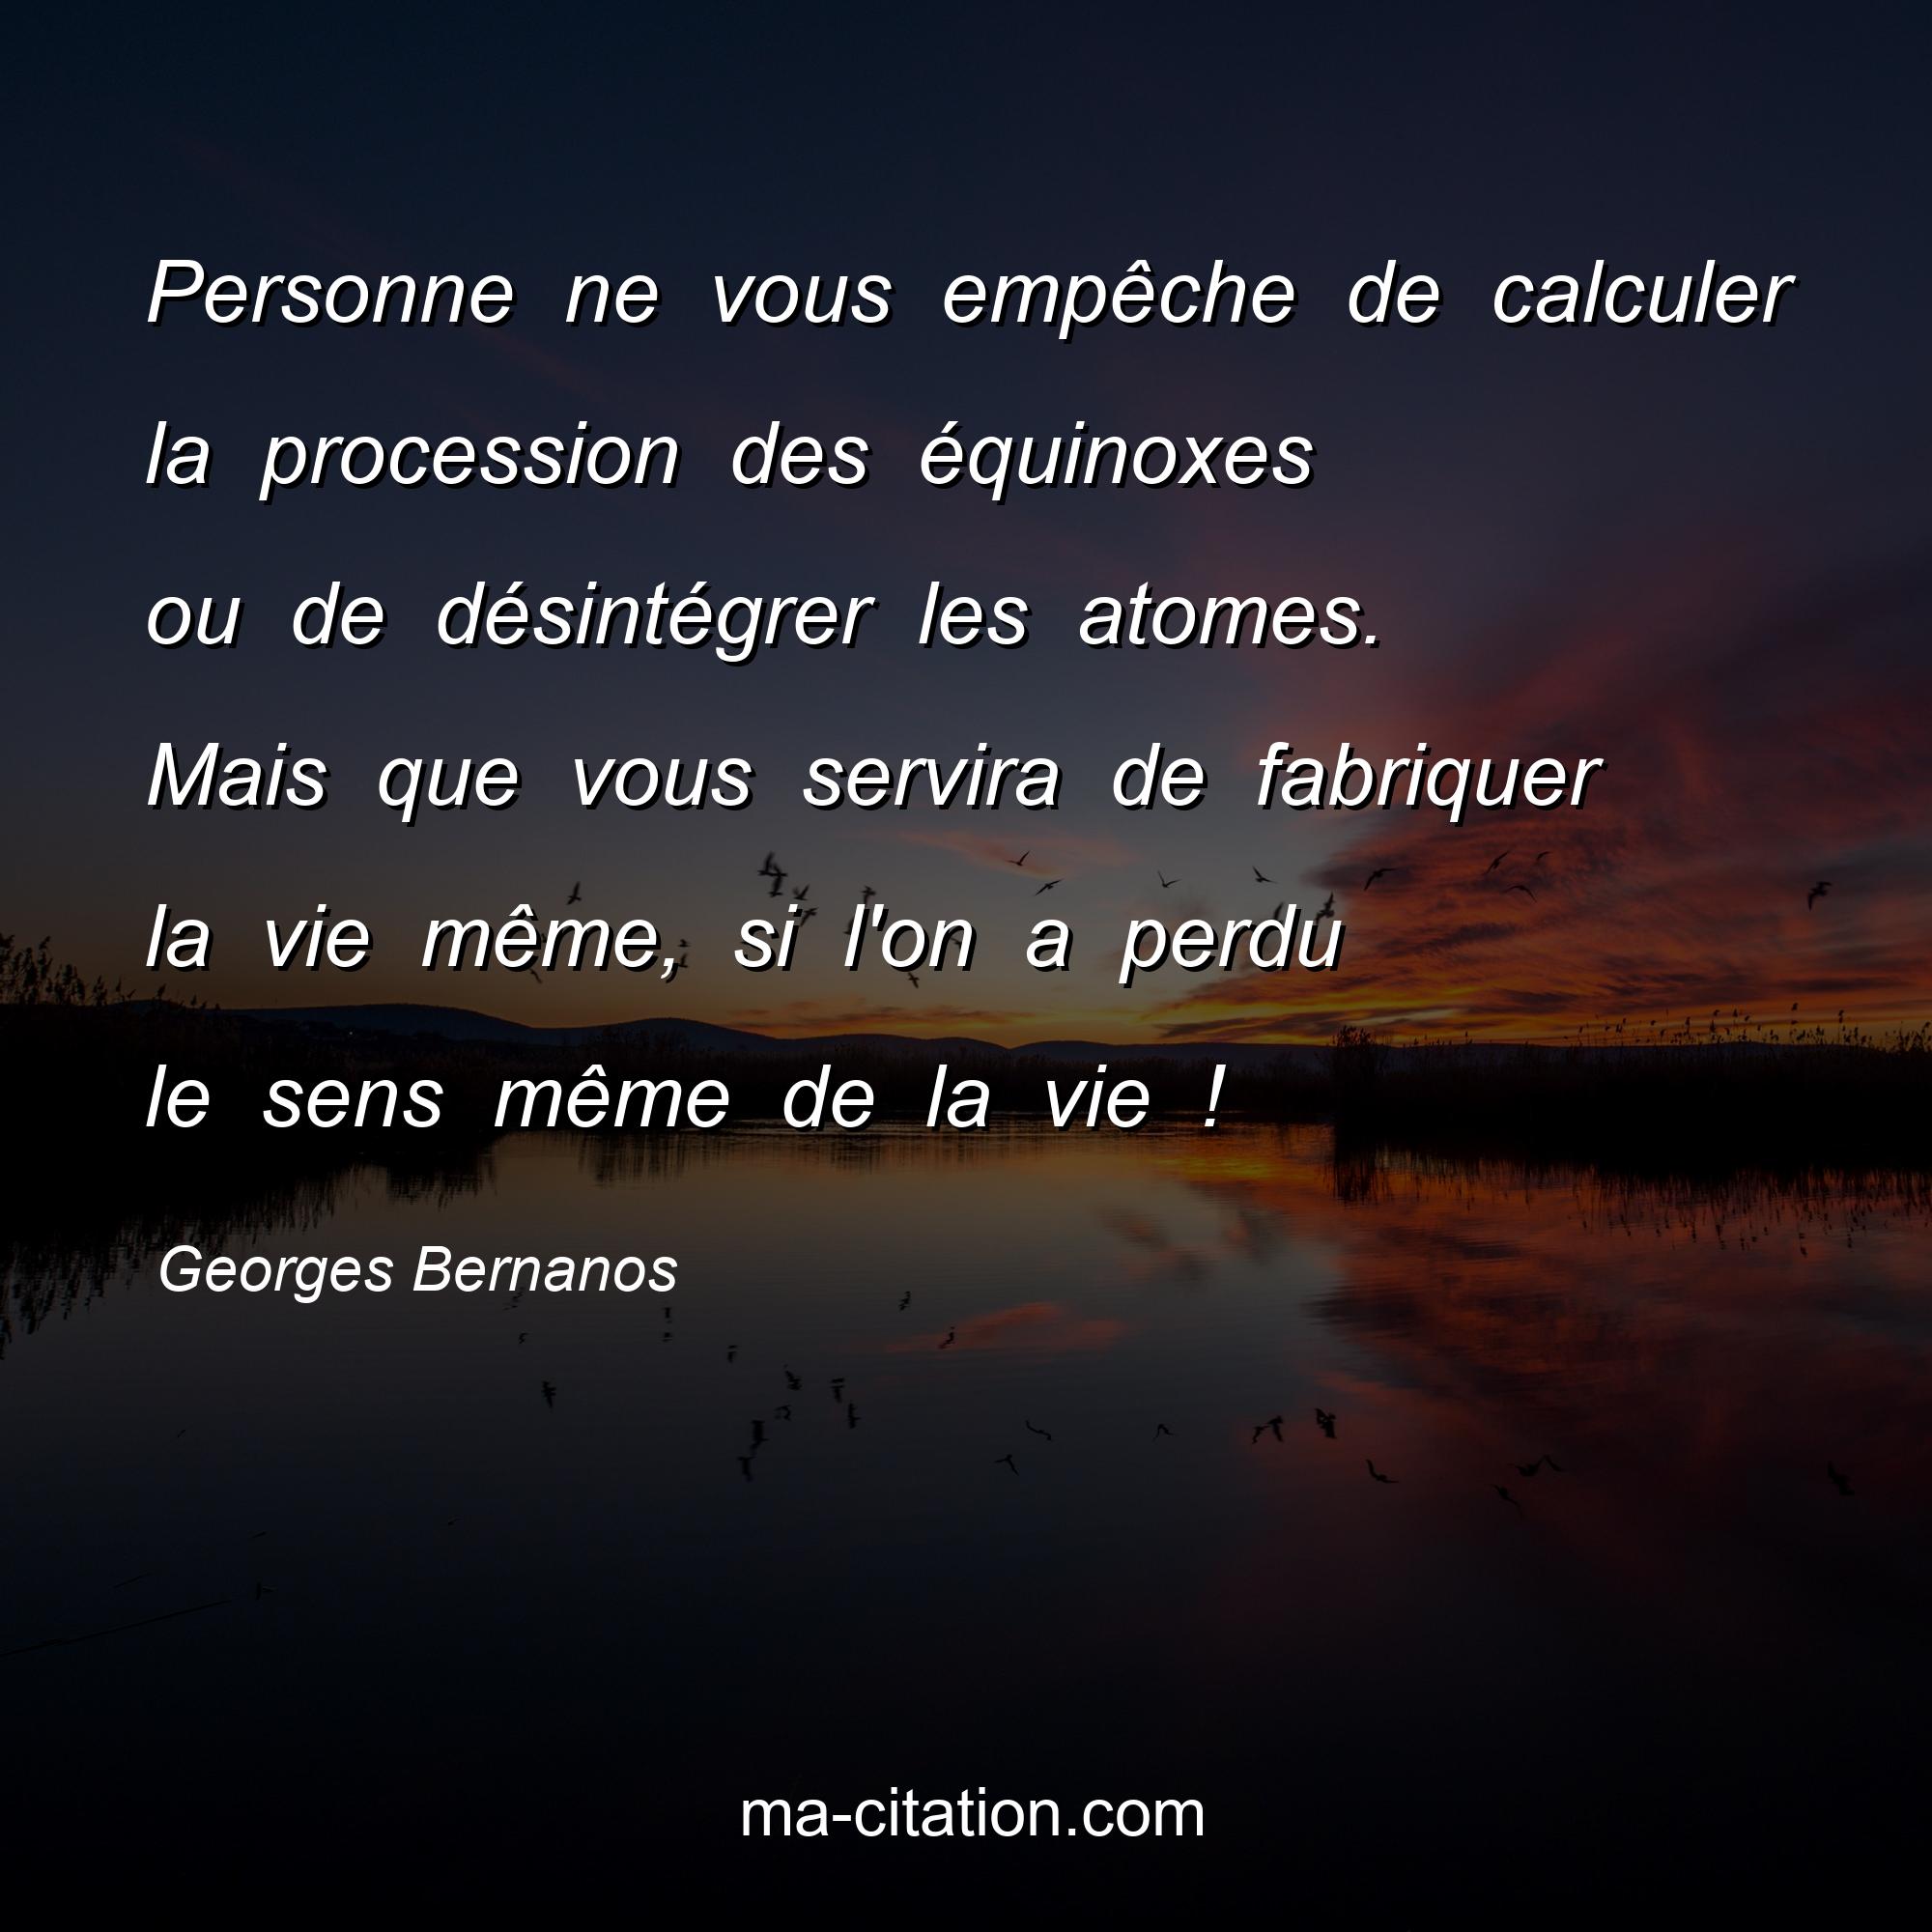 Georges Bernanos : Personne ne vous empêche de calculer la procession des équinoxes ou de désintégrer les atomes. Mais que vous servira de fabriquer la vie même, si l'on a perdu le sens même de la vie !